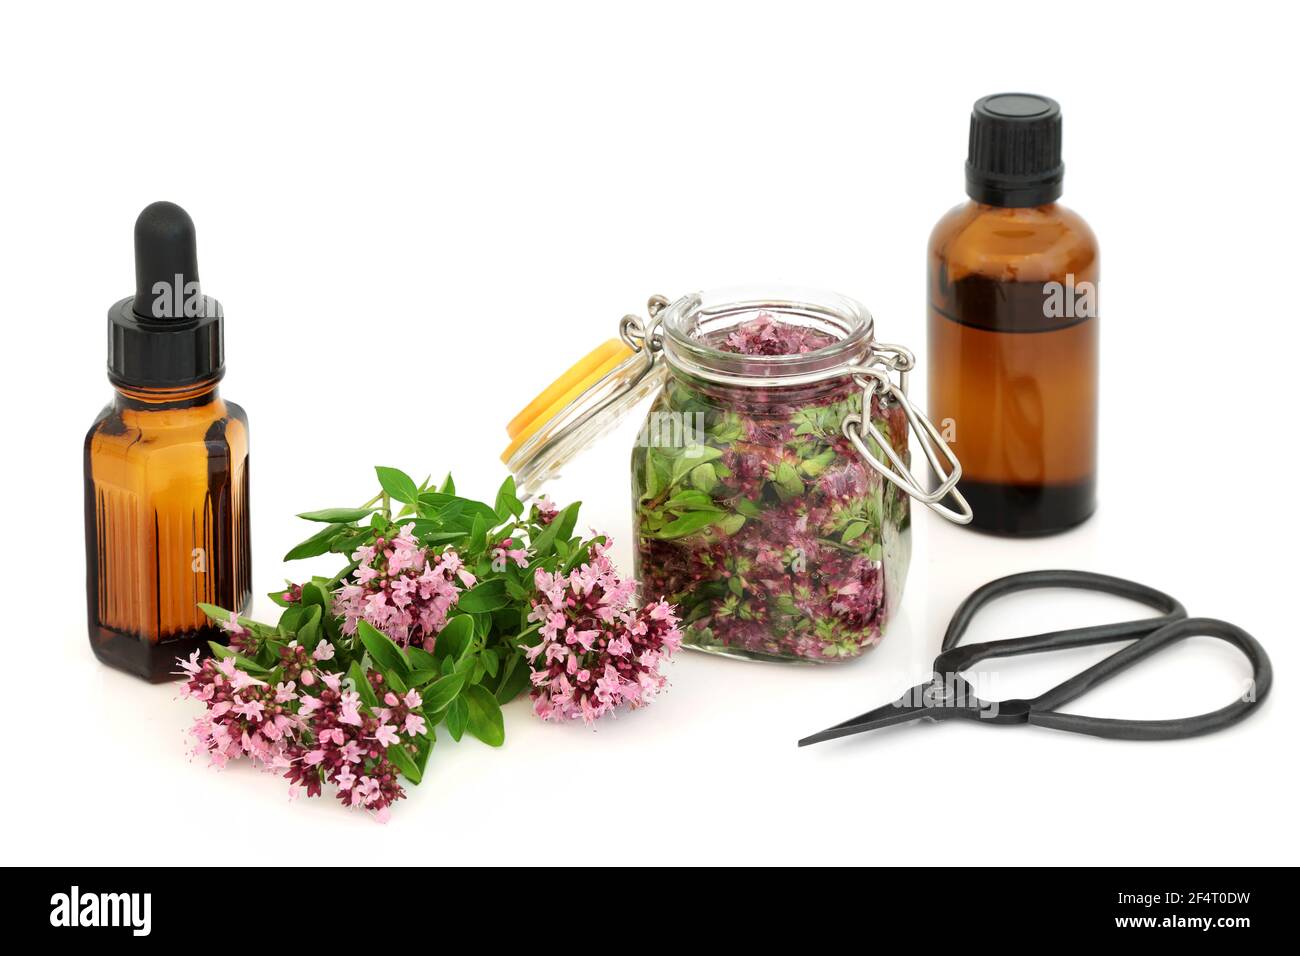 Oregano Kräutermedizin mit Kräuterblüten & Blättern, die in Öl steeping & in ätherischen Ölen verwendet. Kann IBS-Symptome lindern, ist antibakteriell, anti inflammato Stockfoto